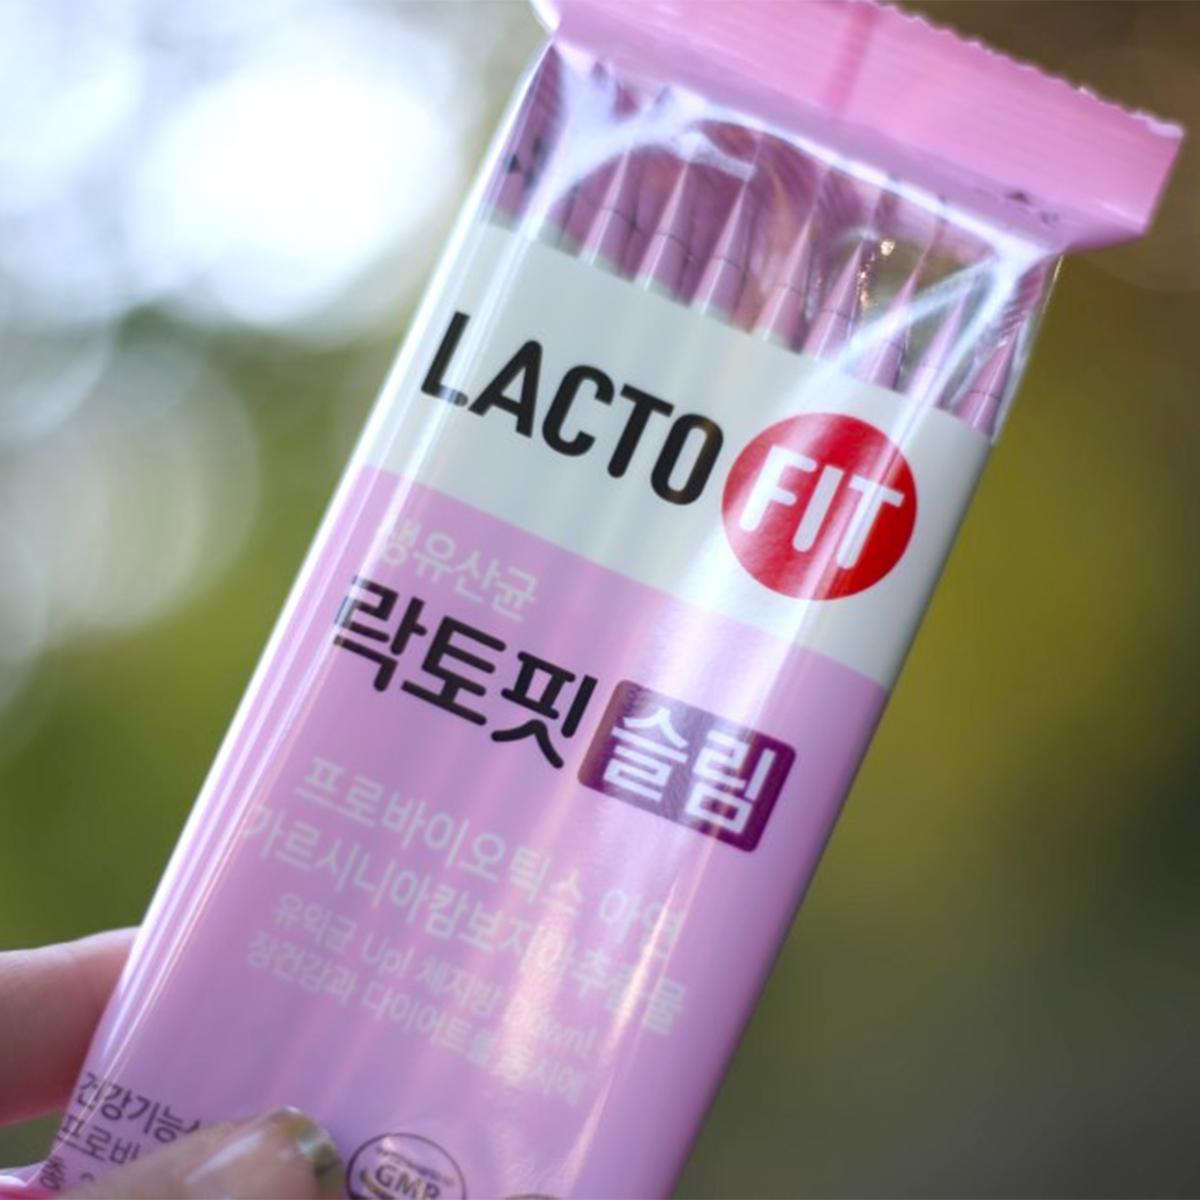 LACTO-FIT 纖體益生菌（60包入/罐）